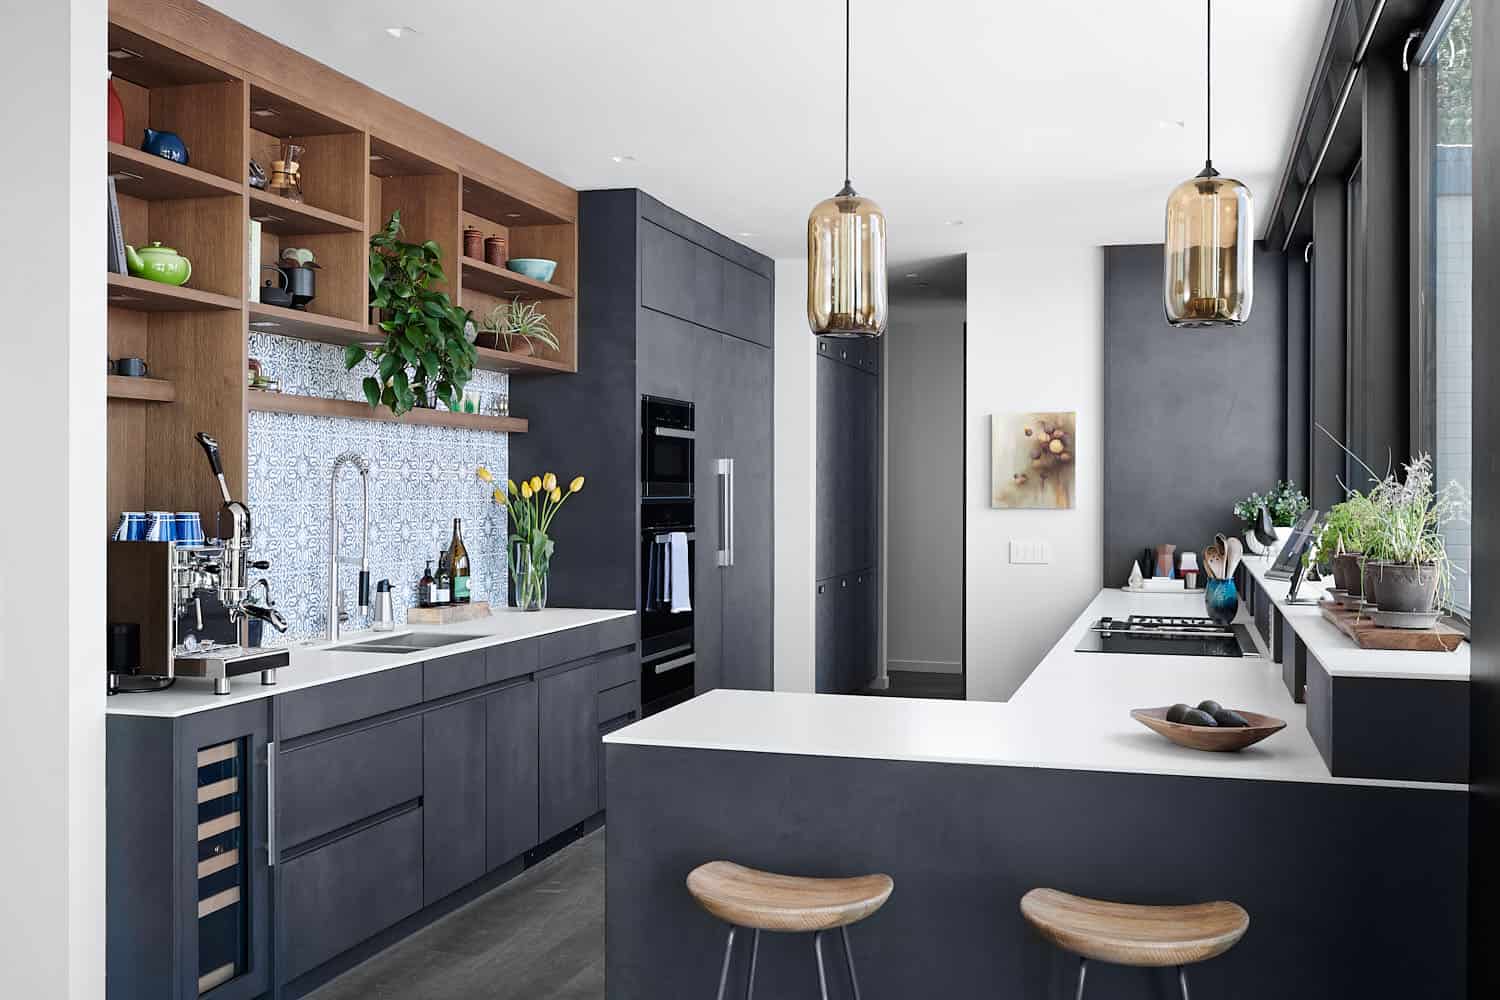 Kitchen Mid Century Modern in Dark Style